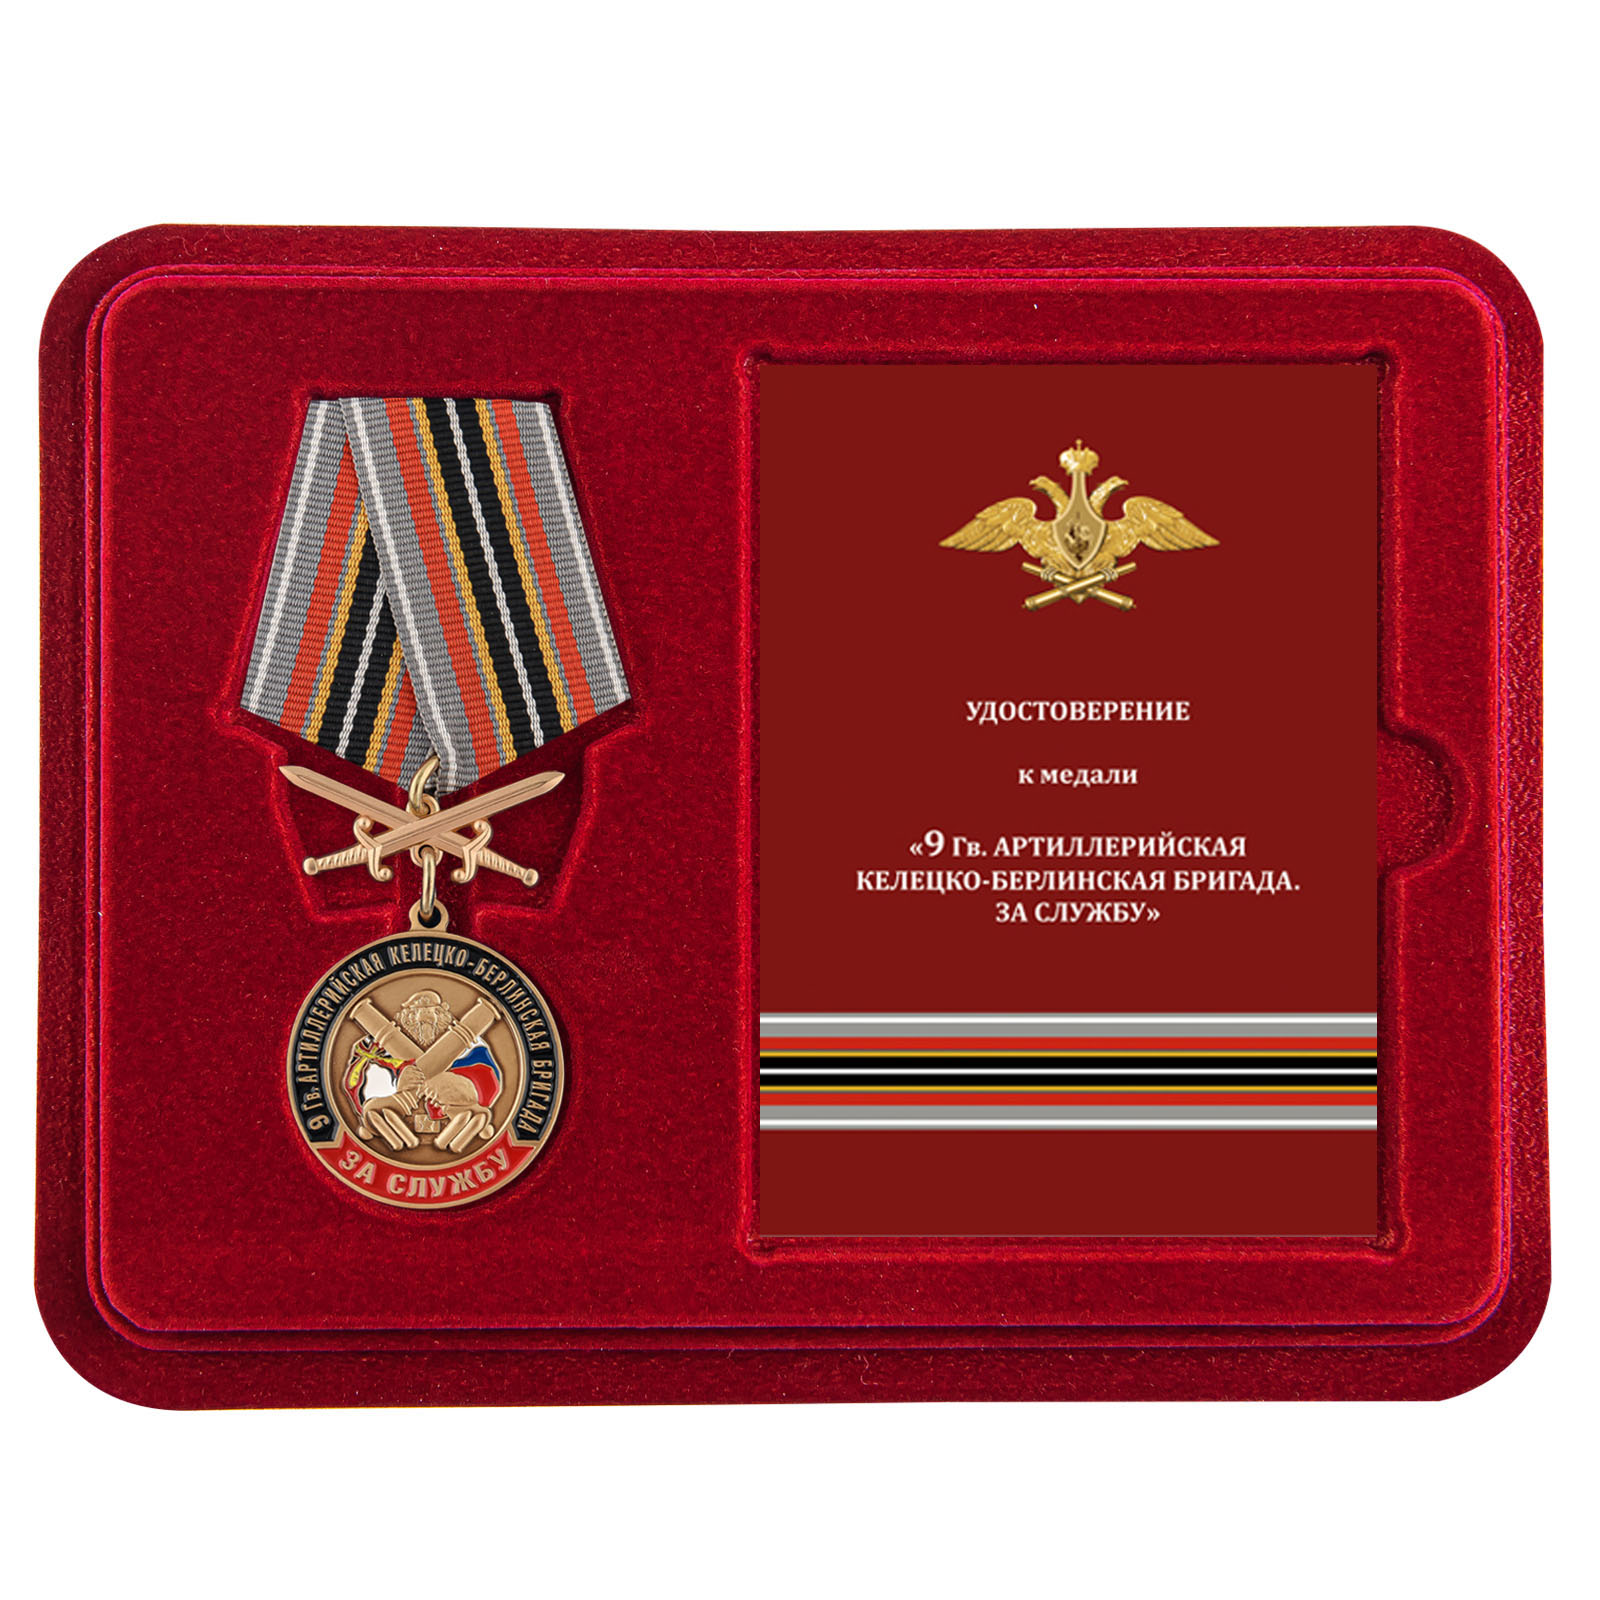 Купить медаль РВиА "За службу в 9-ой артиллерийской бригаде с доставкой